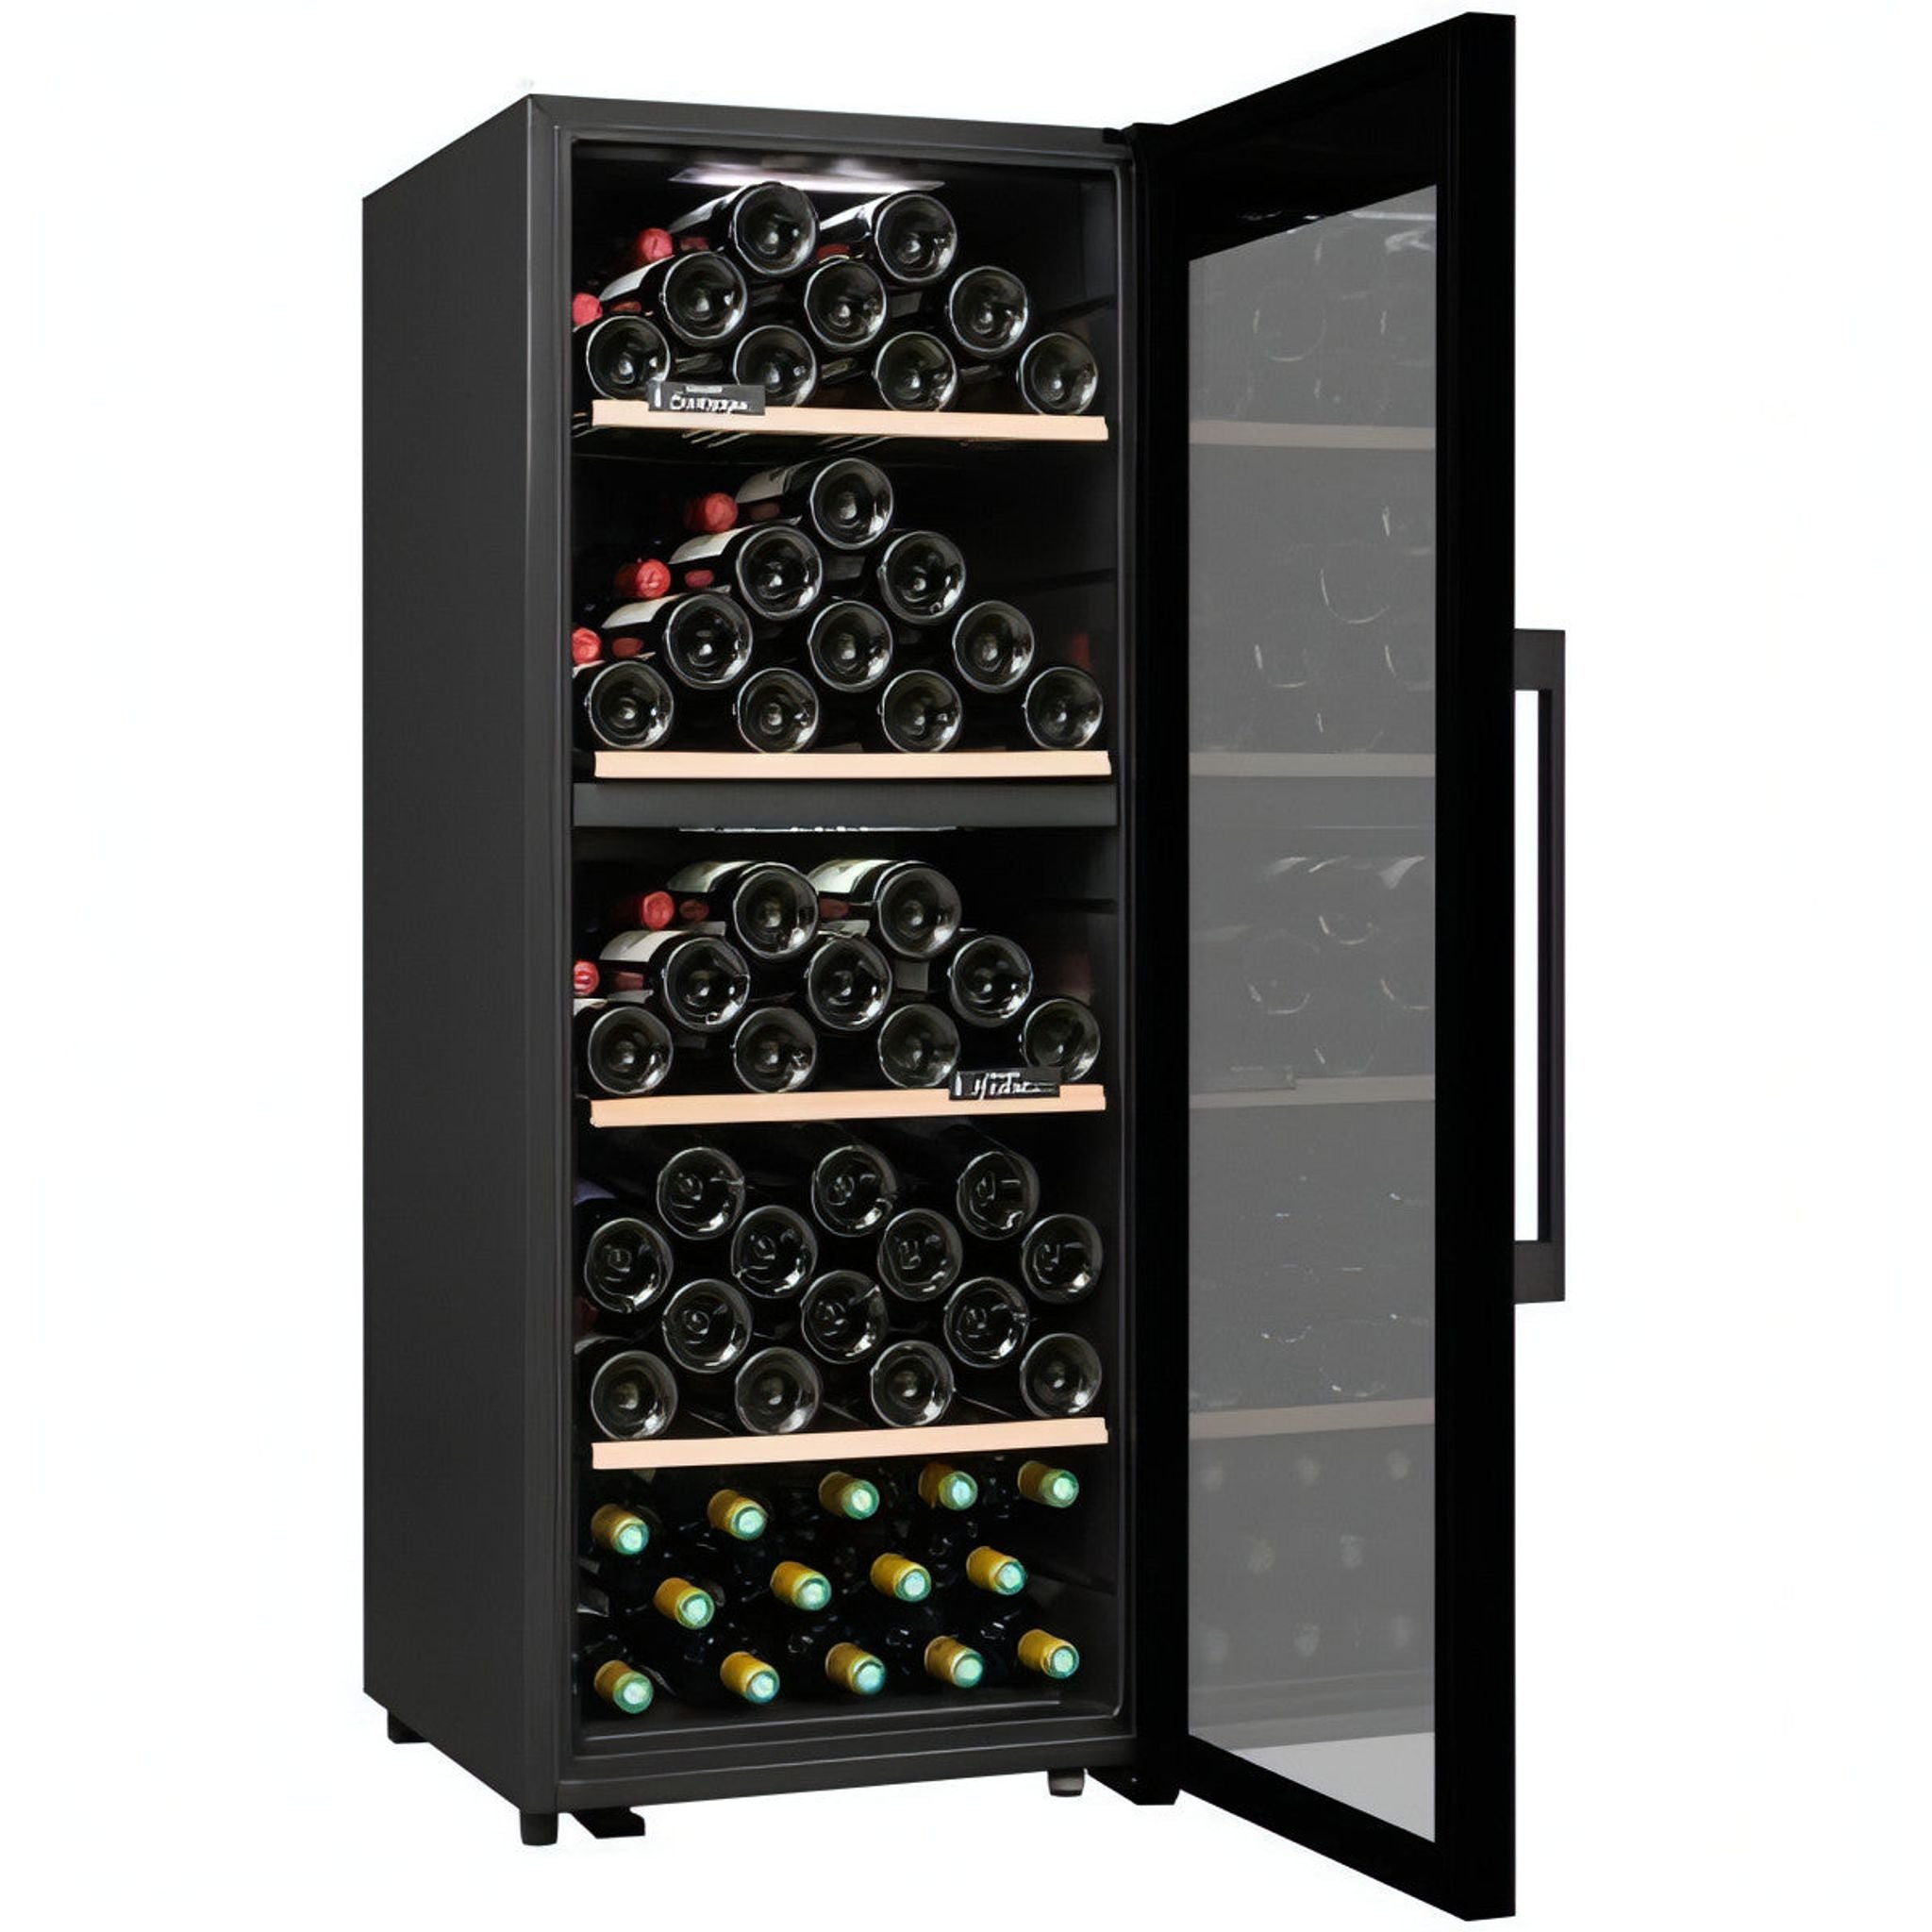 Climadiff - 110 Bottle Freestanding Wine Cooler CD110B1